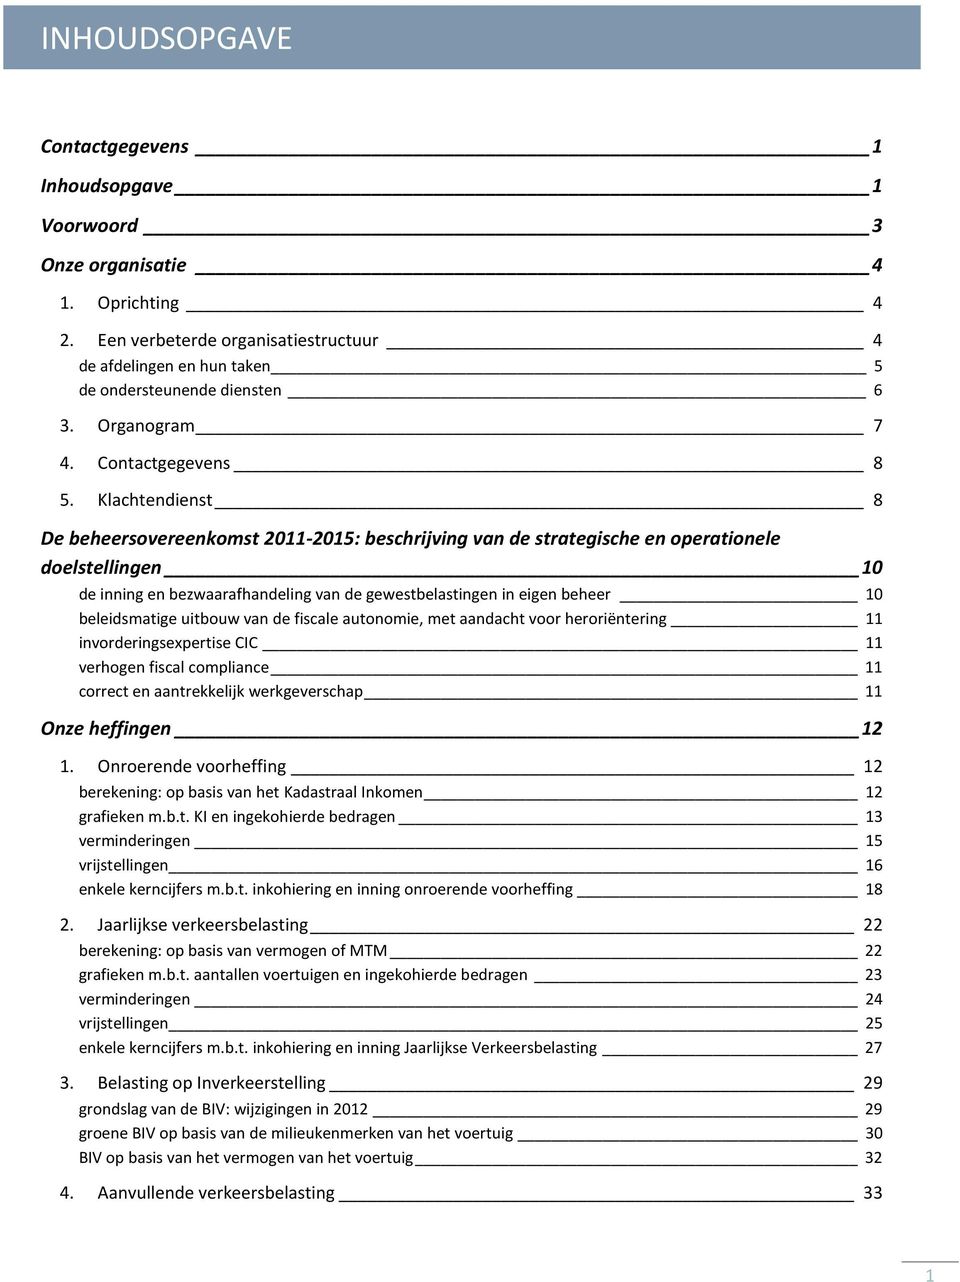 Klachtendienst 8 De beheersovereenkomst 2011-2015: beschrijving van de strategische en operationele doelstellingen 10 de inning en bezwaarafhandeling van de gewestbelastingen in eigen beheer 10